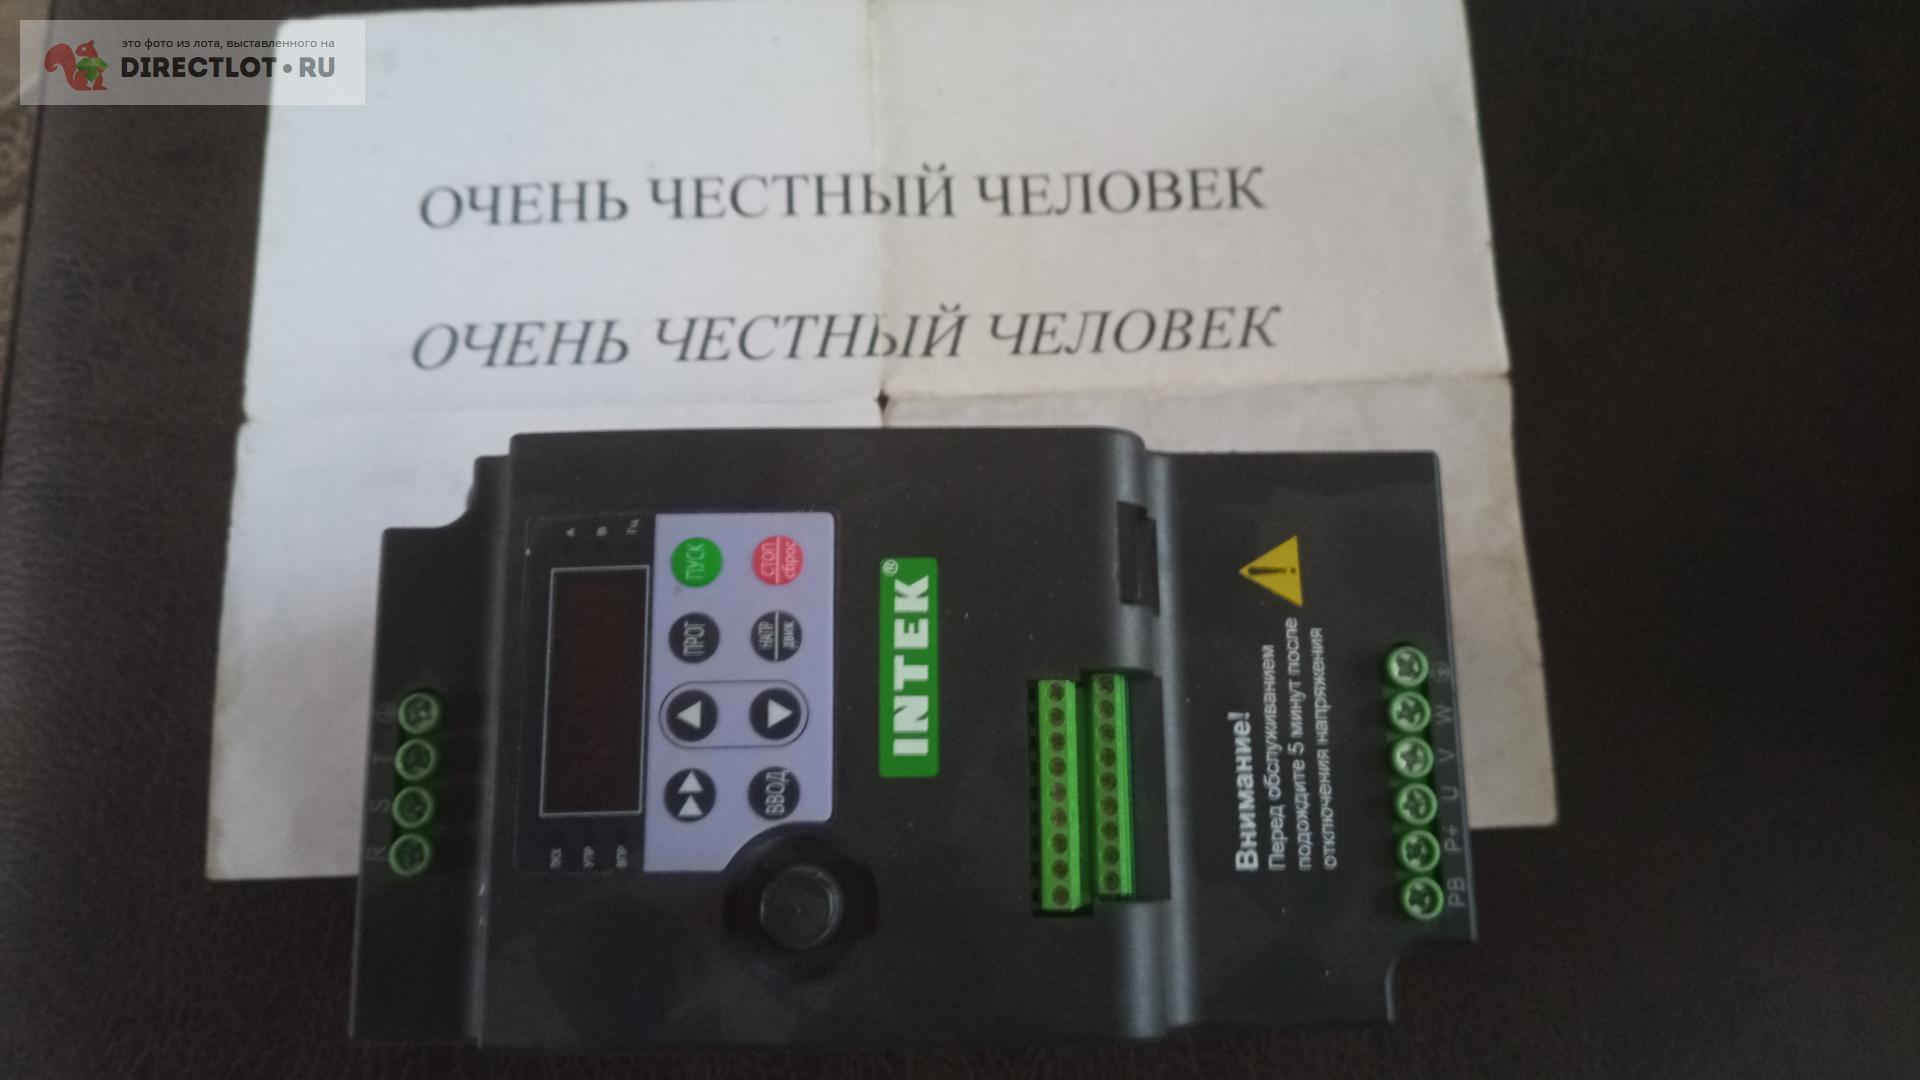 Частотный преобразователь  в Владимире цена 2500 Р на DIRECTLOT .